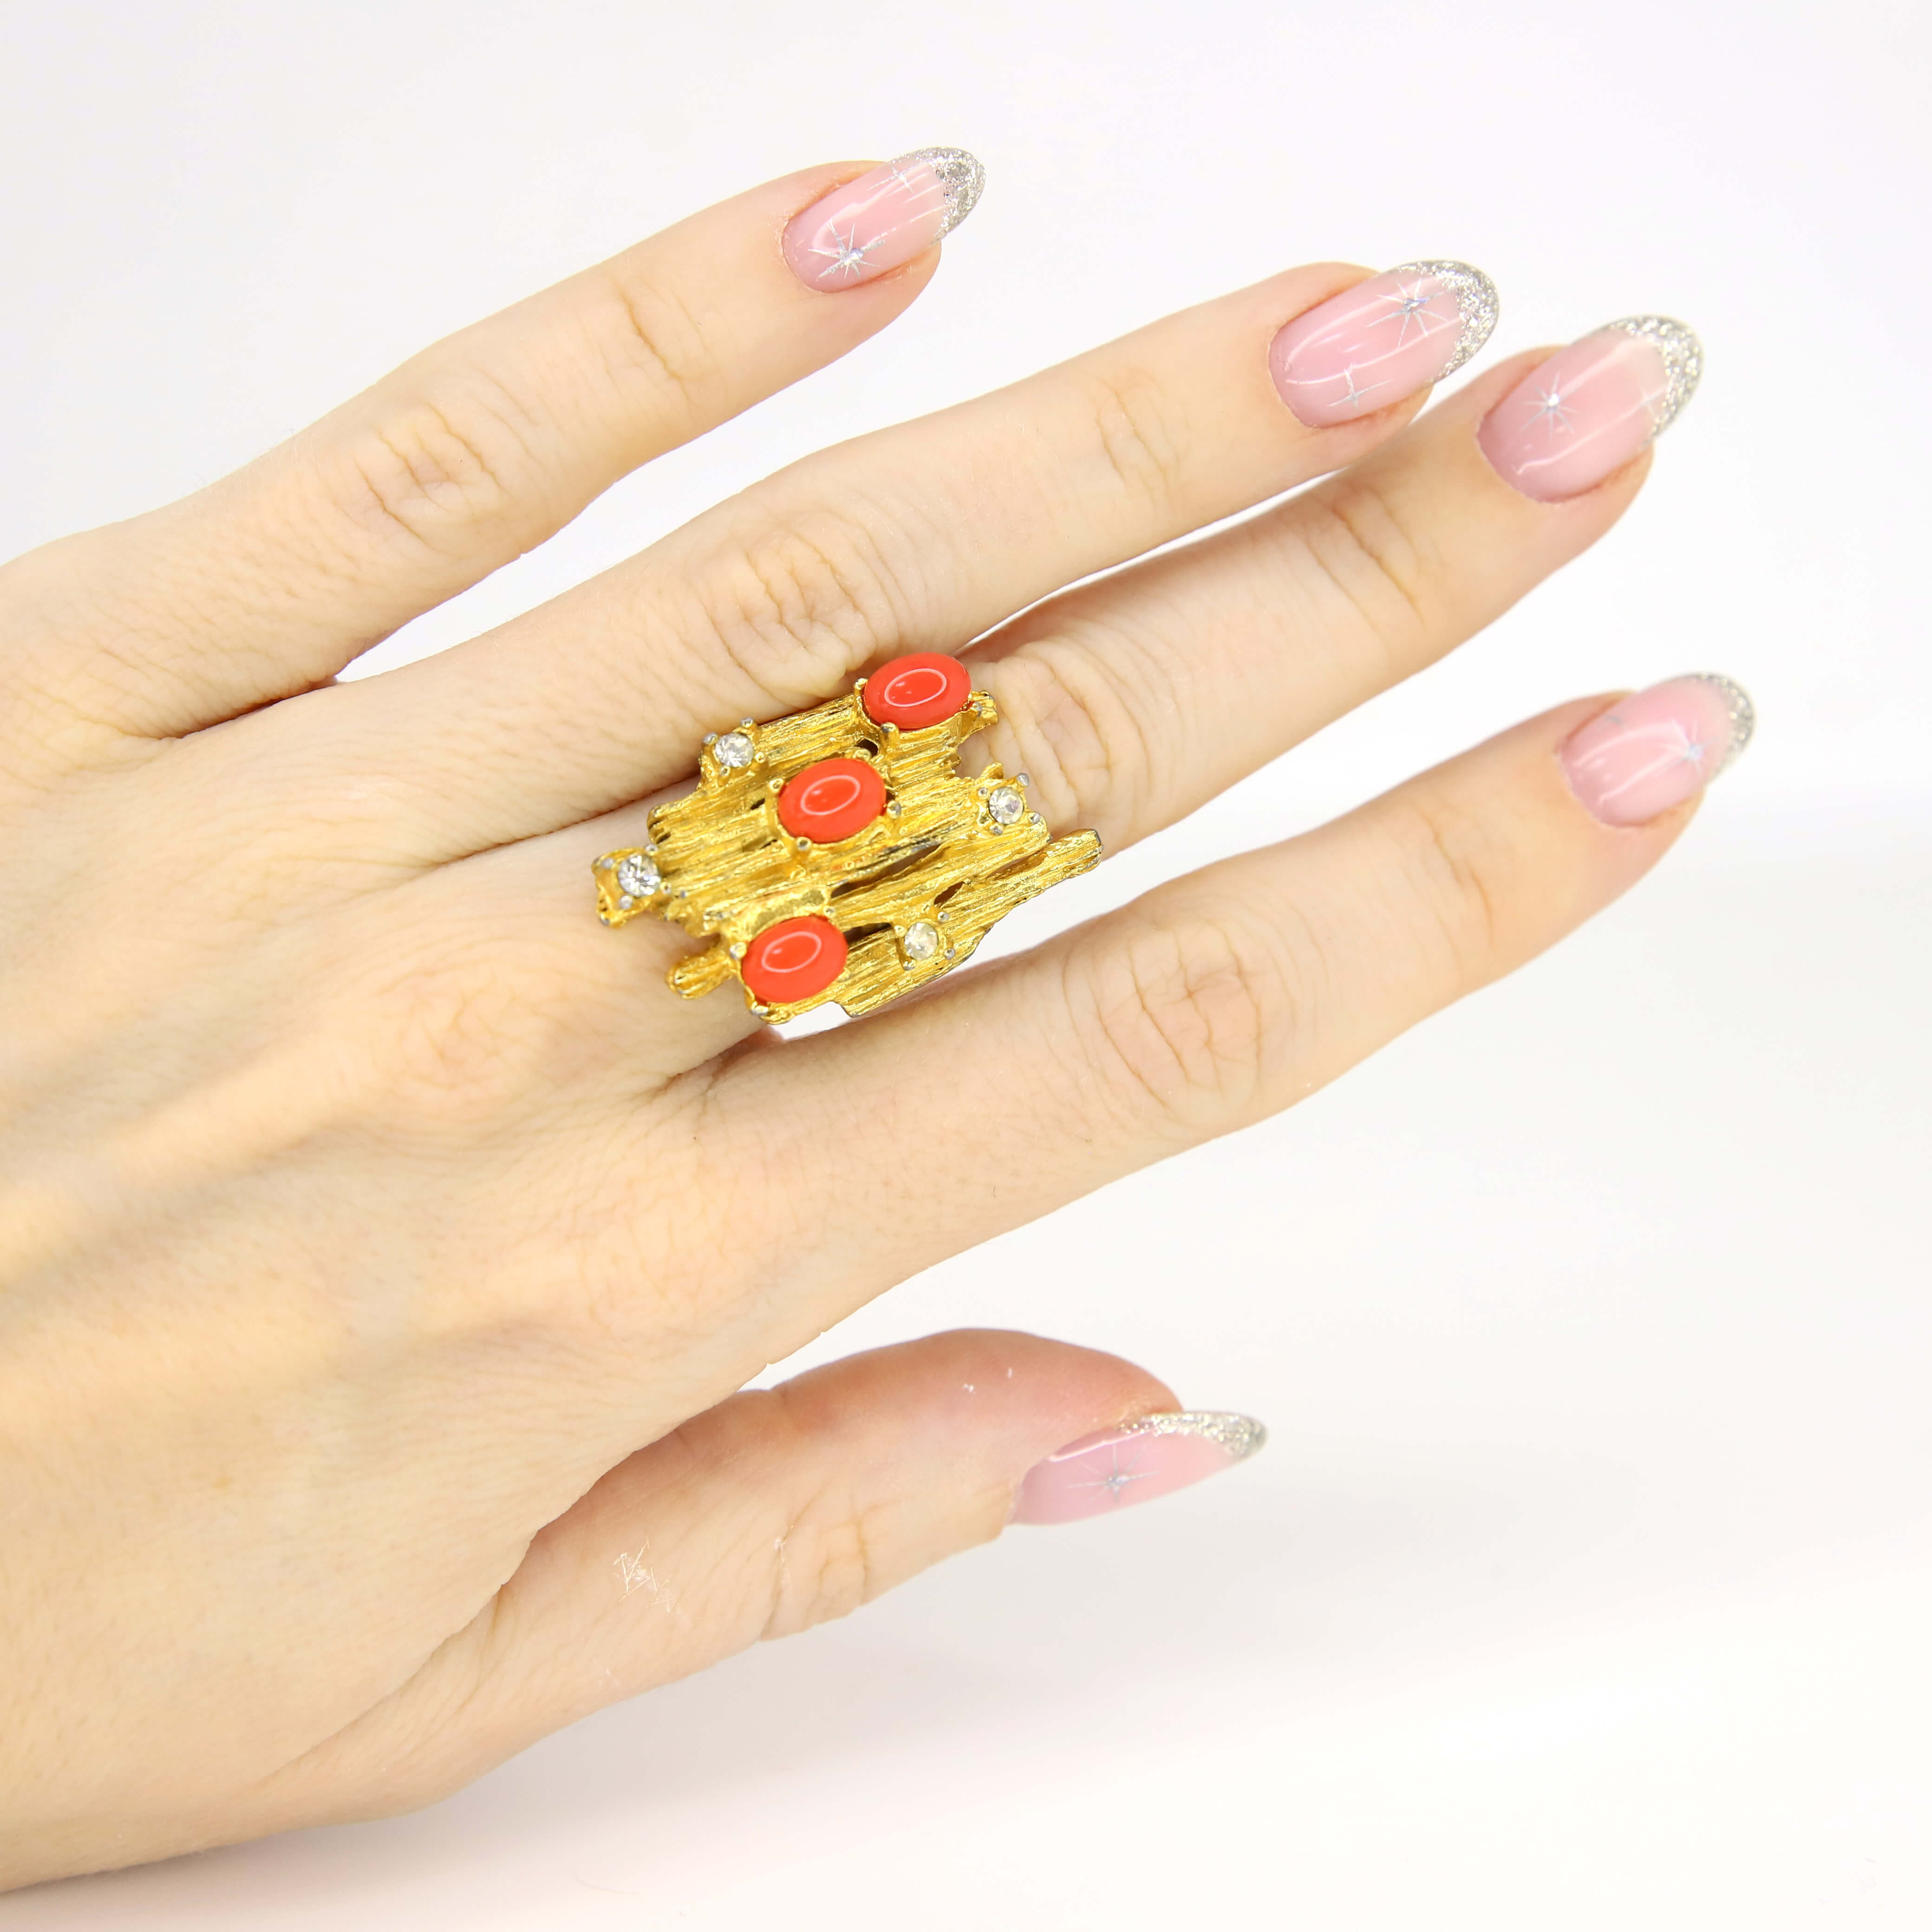 Винтажное кольцо Vogue размер 15-17.5, цвет Красный, фото 1